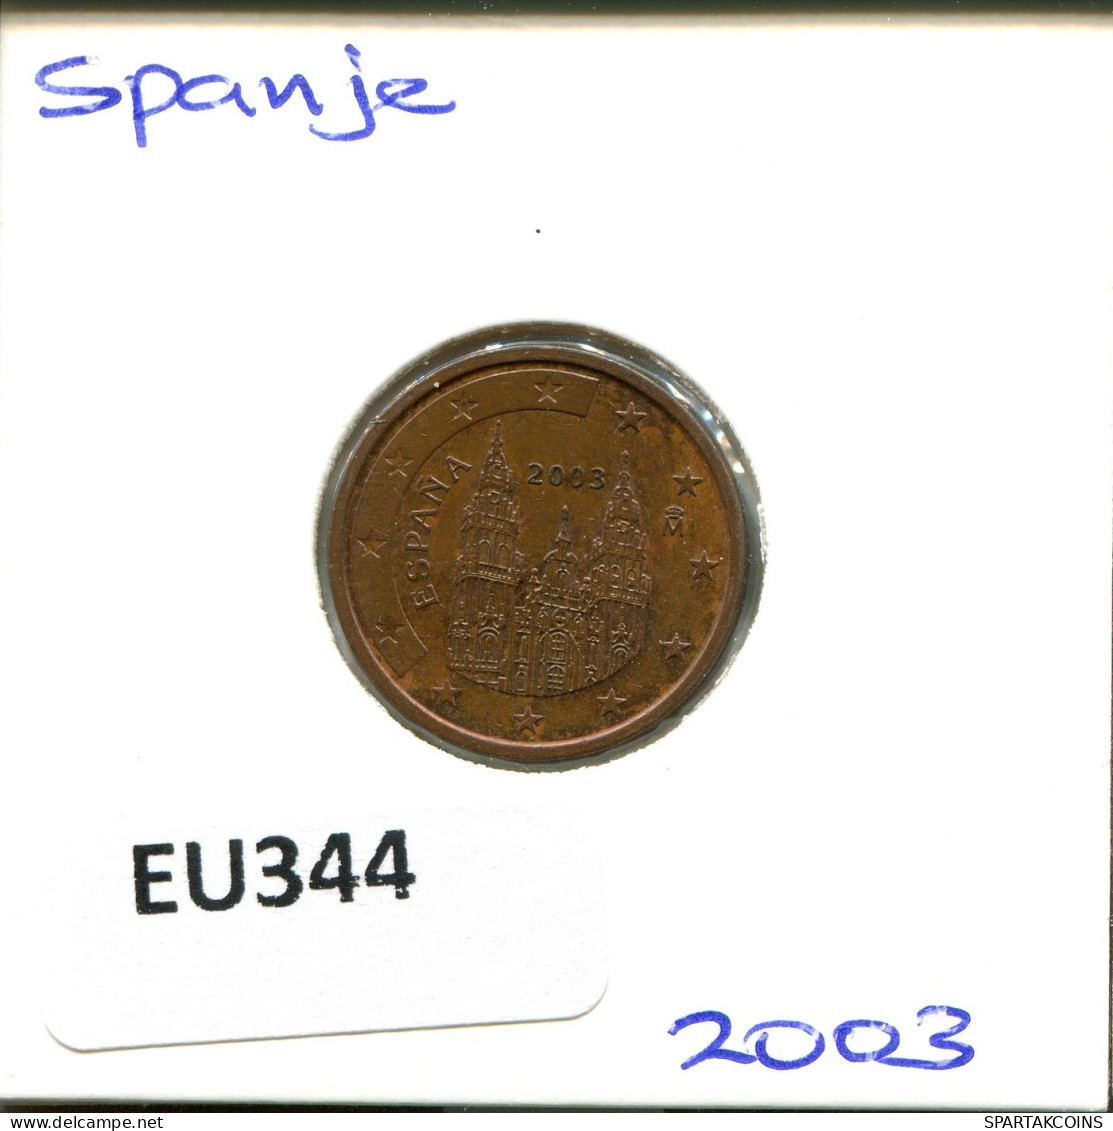 2 EURO CENTS 2003 SPAIN Coin #EU344.U.A - España